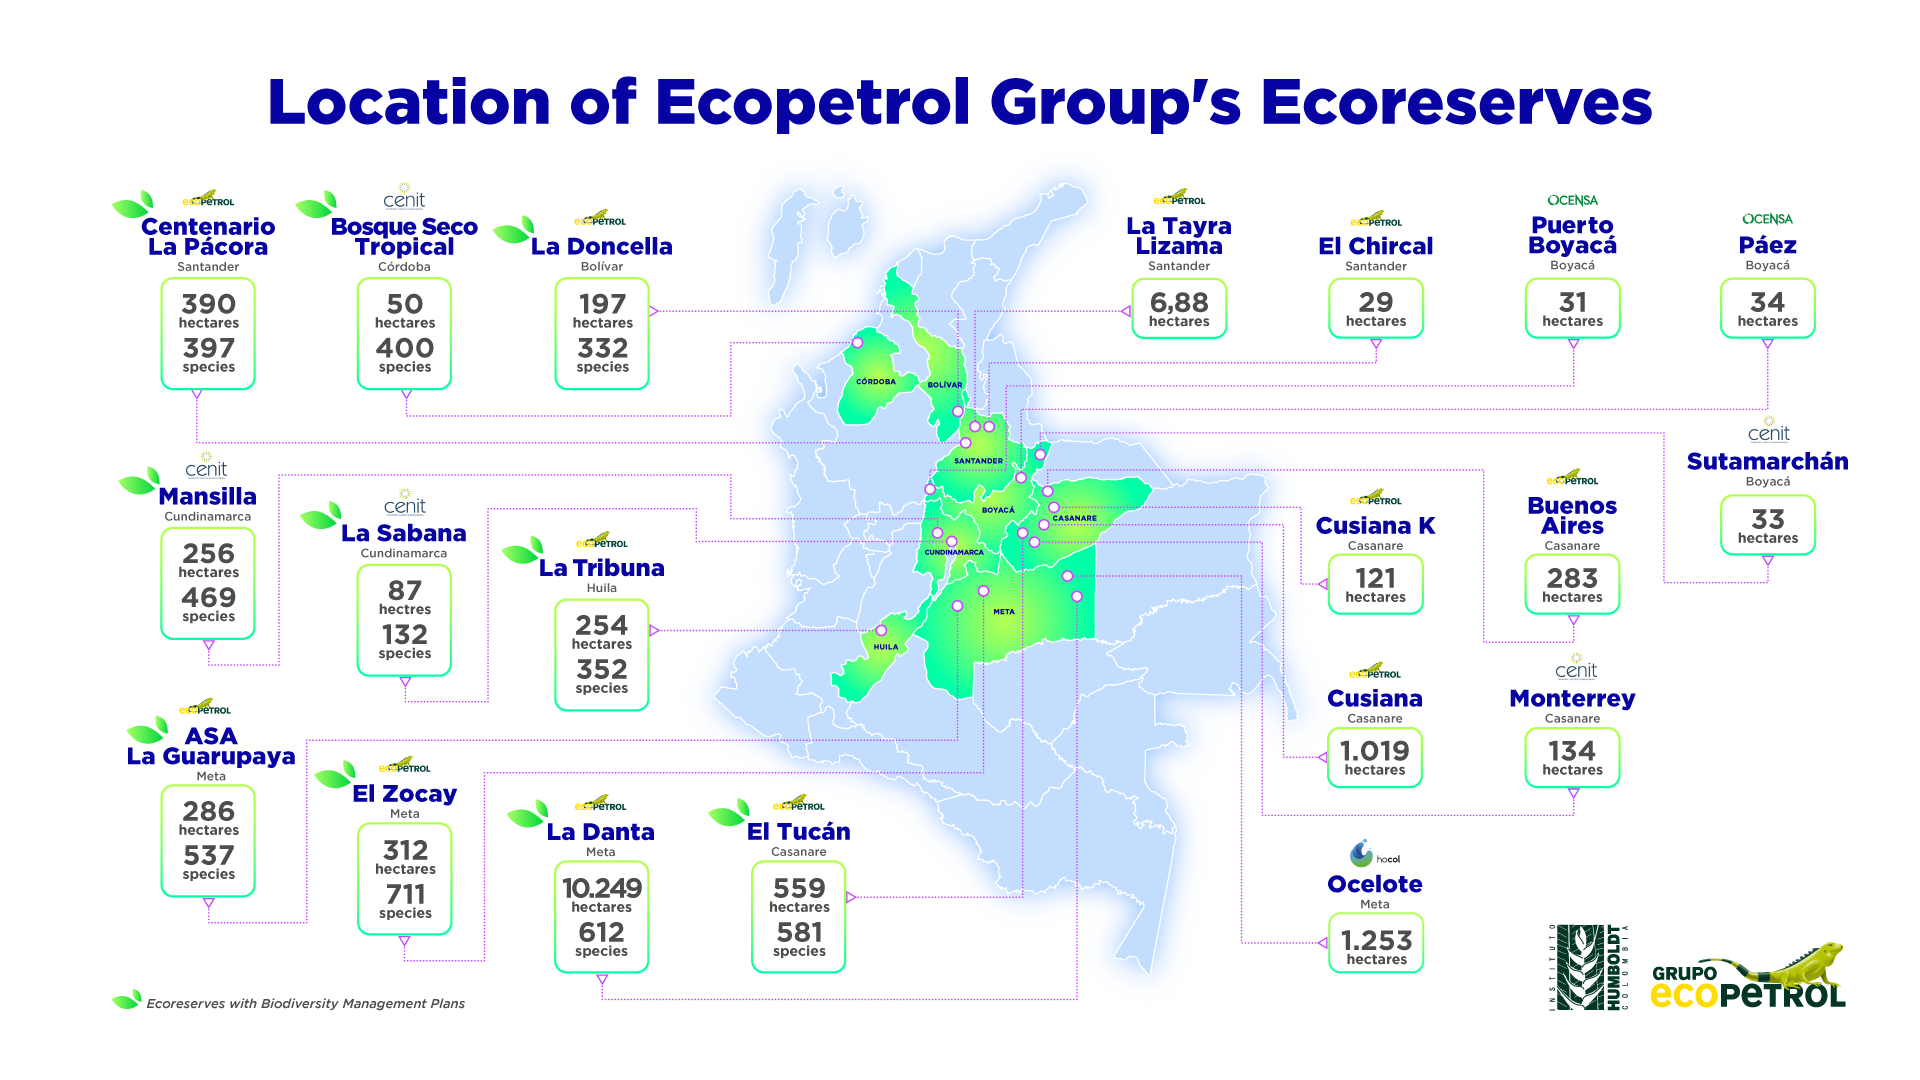 Location of Ecopetrol Group's Ecoreserves